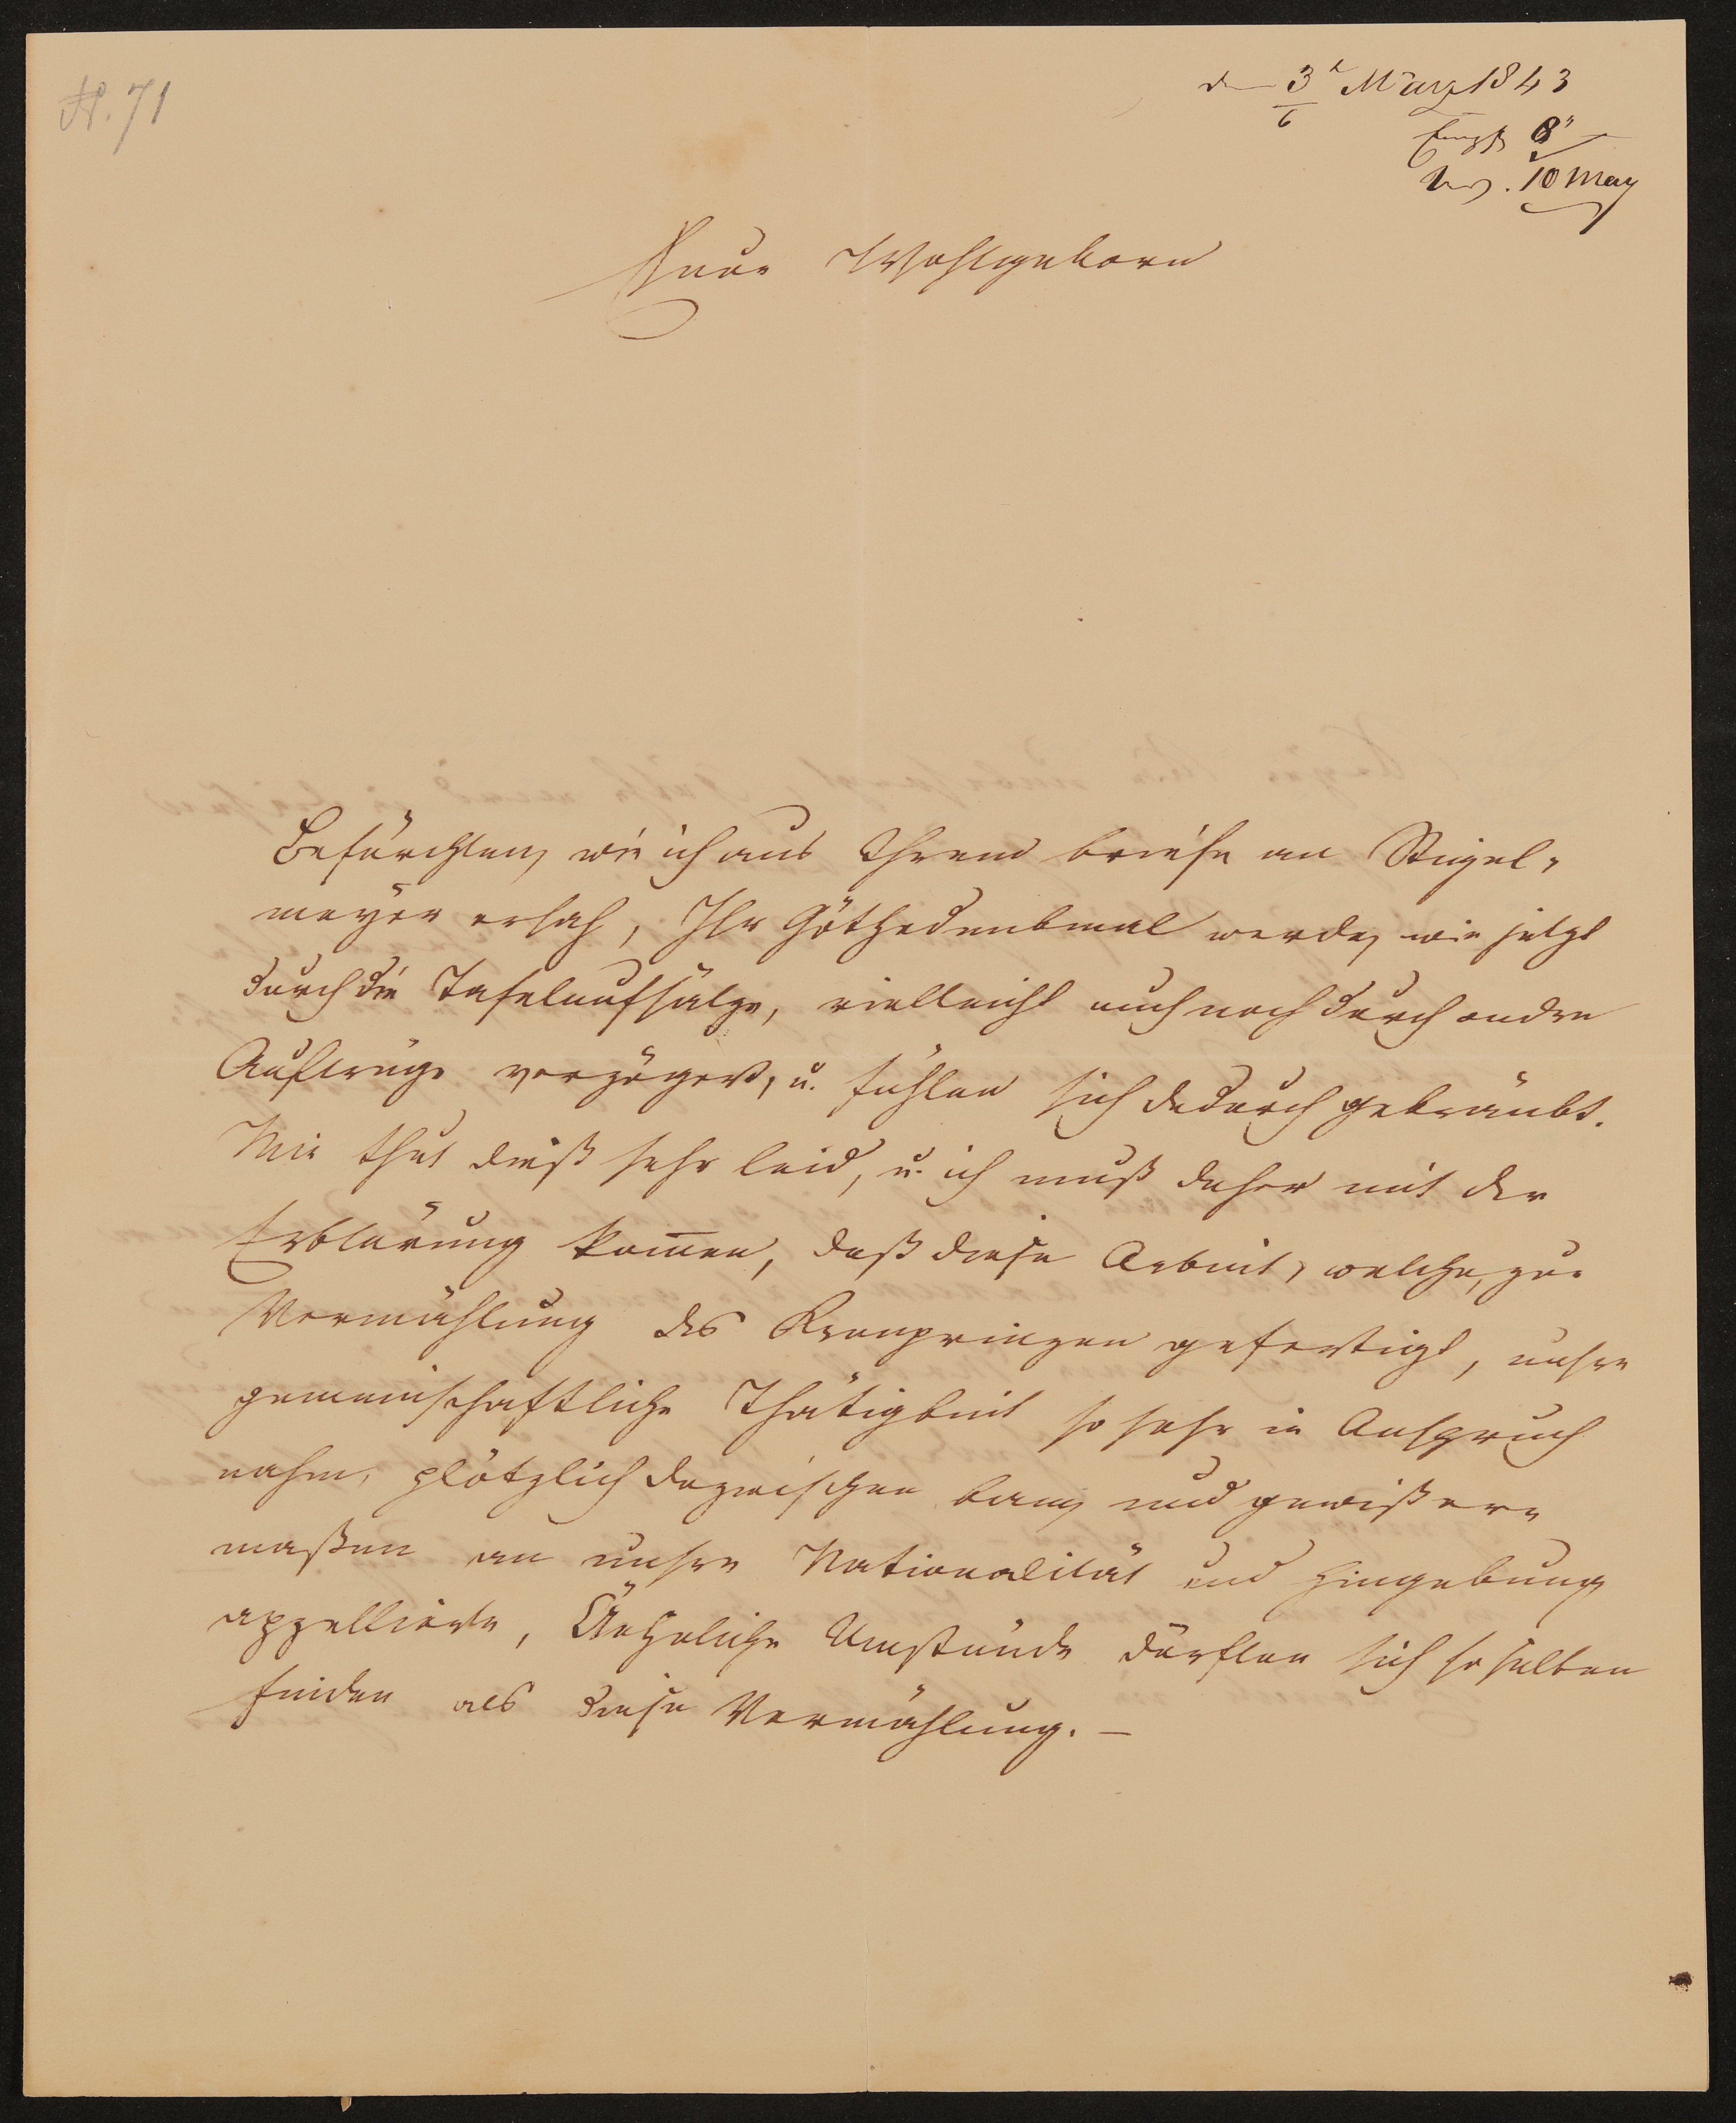 Brief von Ludwig Schwanthaler an Friedrich John vom 04.03.1843 (Freies Deutsches Hochstift / Frankfurter Goethe-Museum Public Domain Mark)